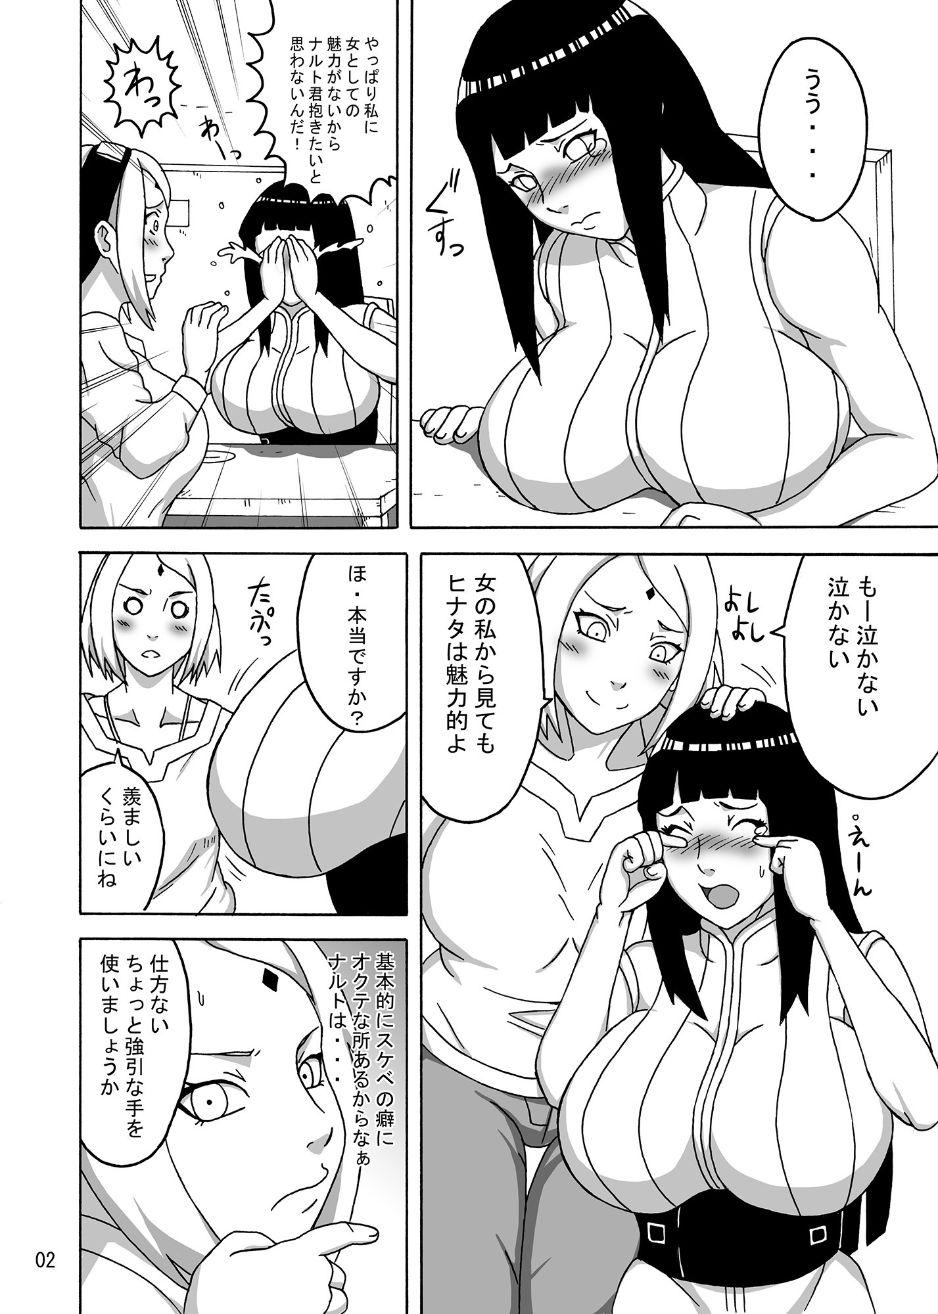 Sexy Sluts naruhina - Naruto Ballbusting - Page 5